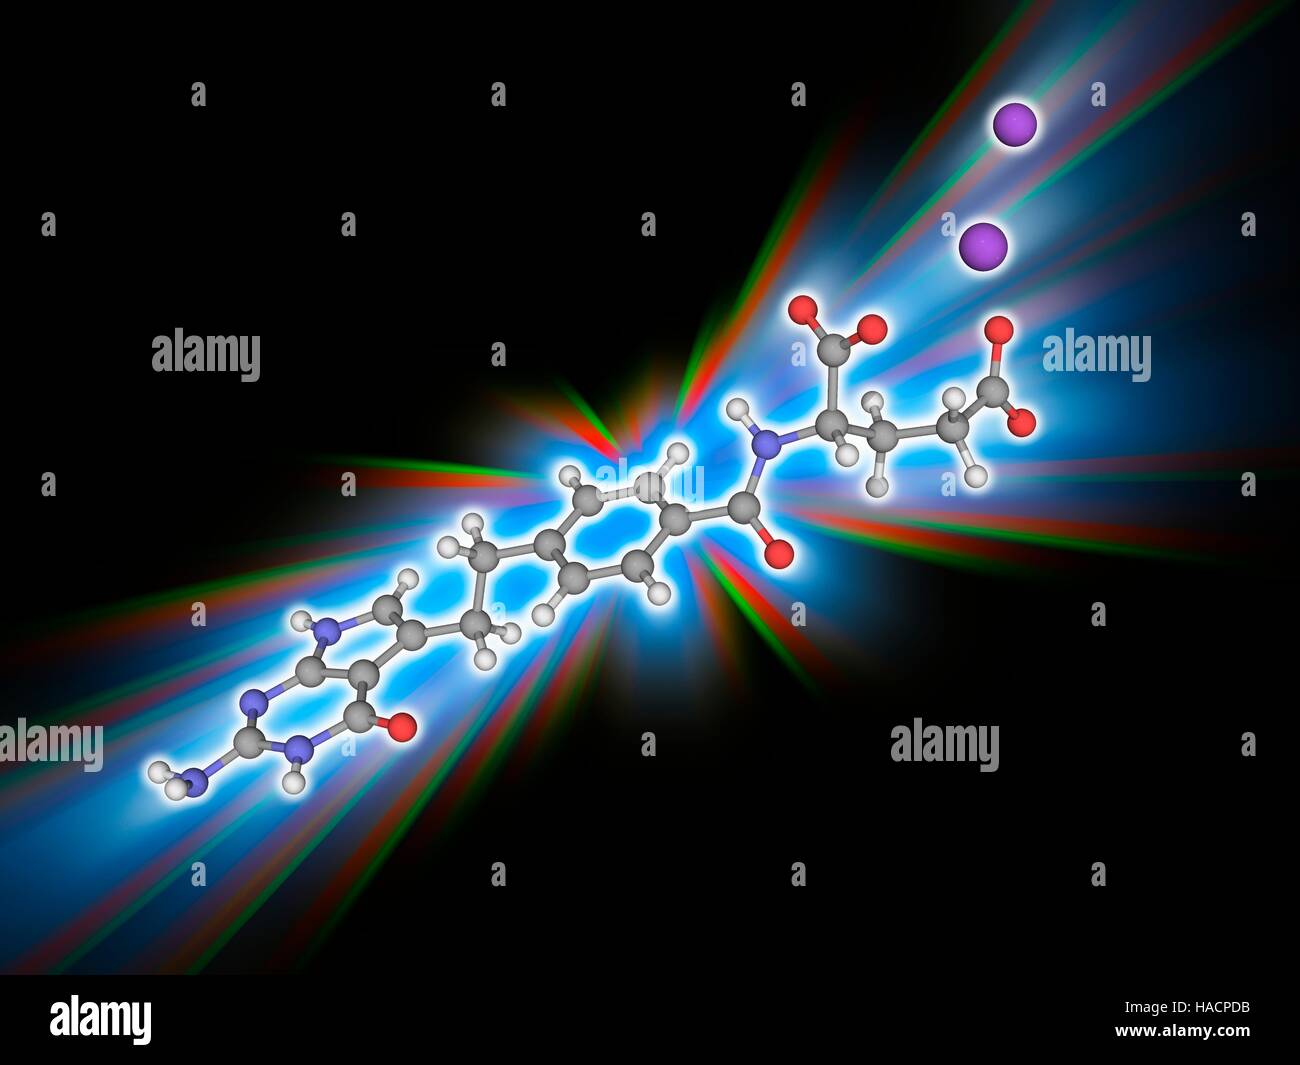 Pemetrexed Binatrium. Molekülmodell der Chemotherapie Medikament Pemetrexed Binatrium (C20. H21. N5. O6. Na2), verwendet, um Genuss Pleuramesotheliom sowie nicht-kleinzelligem Lungenkrebs. Atome als Kugeln dargestellt werden und sind farblich gekennzeichnet: Kohlenstoff (grau), Wasserstoff (weiß), Stickstoff (blau) und Natrium (violett). Abbildung. Stockfoto